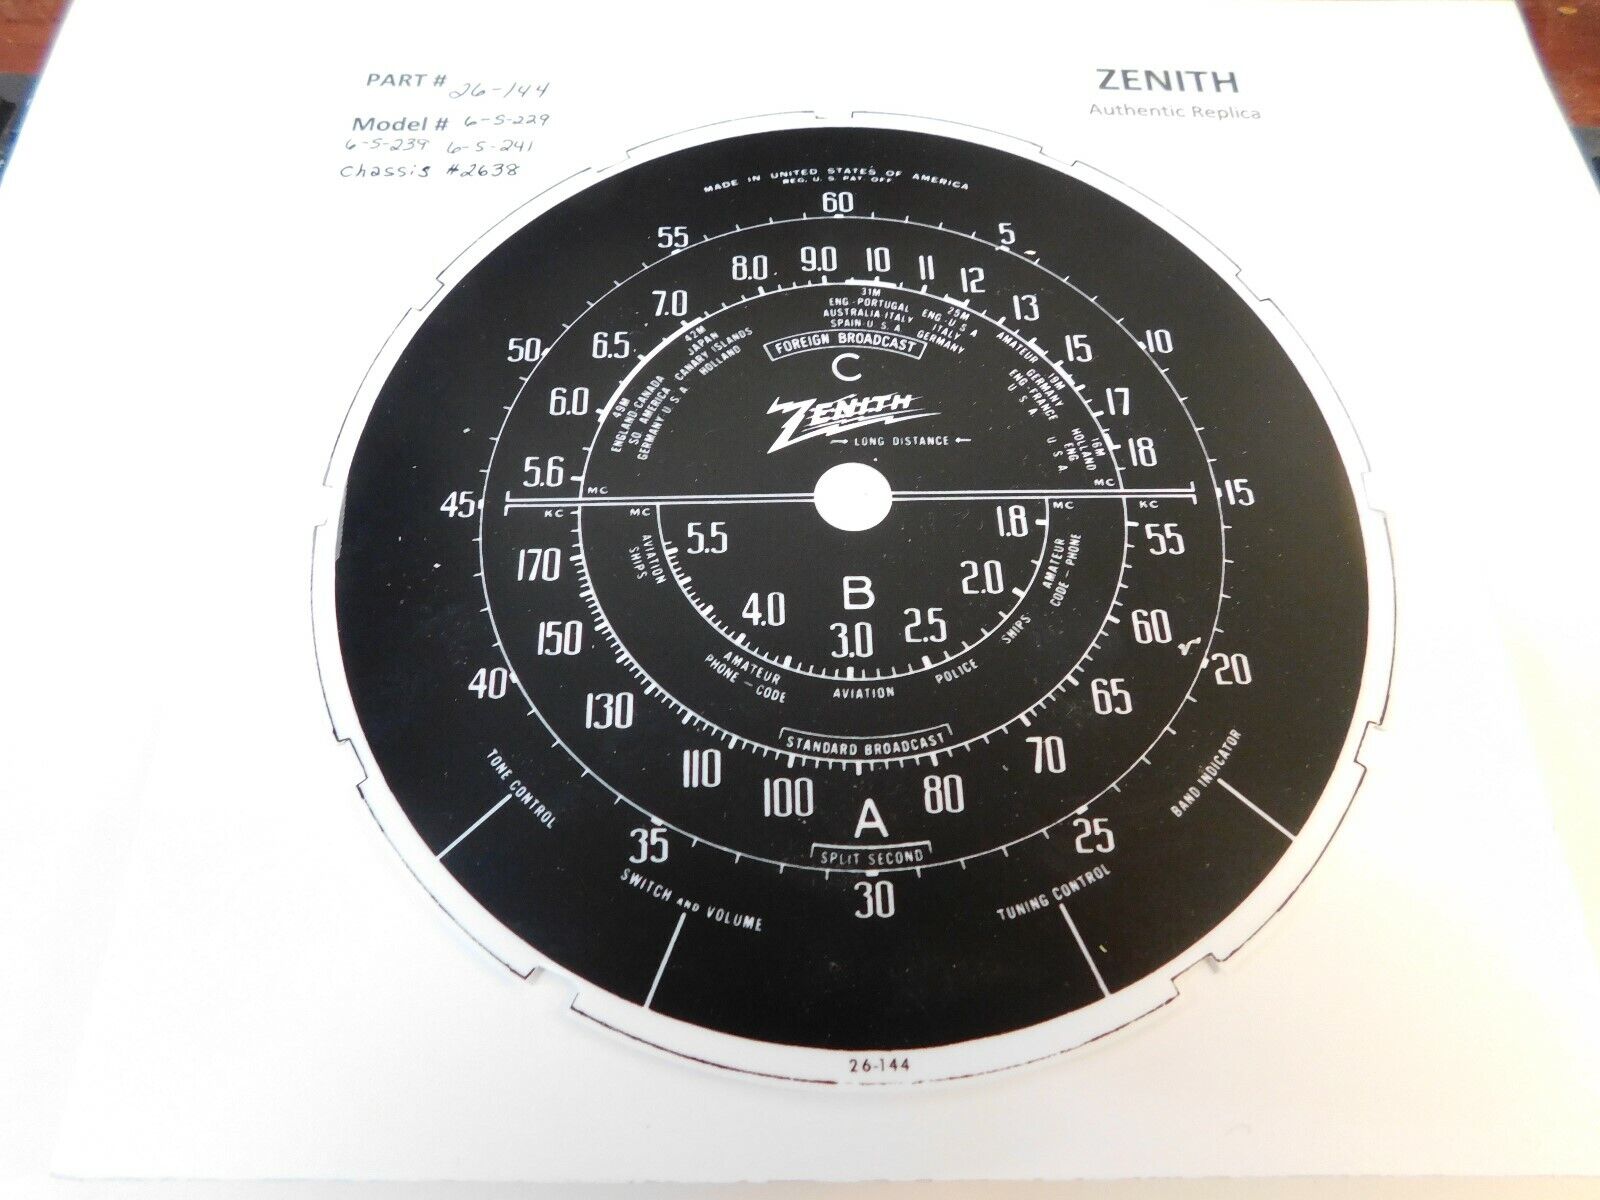 Authentic Vintage Replica Zenith RADIO DIAL #26-144 , 6-s-229, 6-s-239, 6-s-241